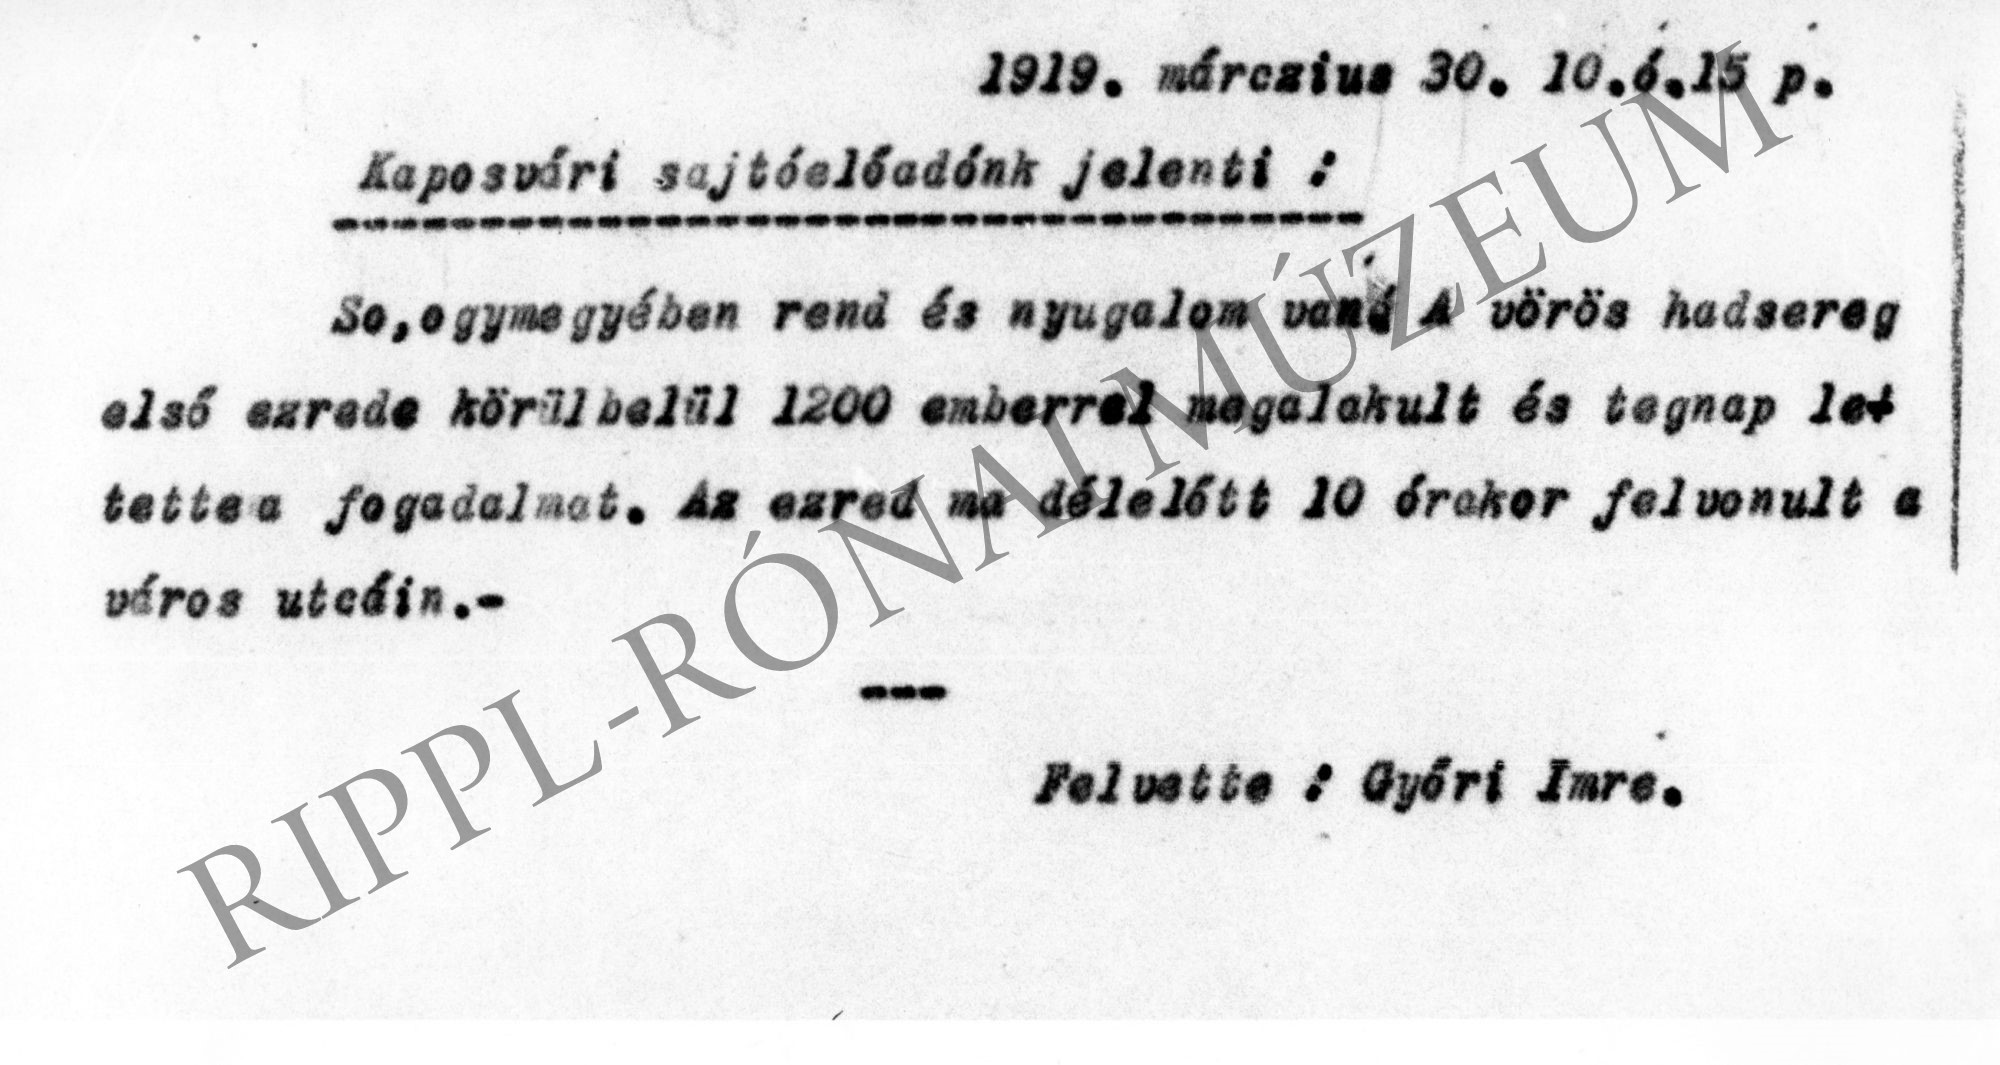 Kaposvári sajtóelőadó jelentése (1919. március 30.) Somogyban a vörös hadsereg első ezrede 1200 emberrel megalakult. (Rippl-Rónai Múzeum CC BY-NC-SA)